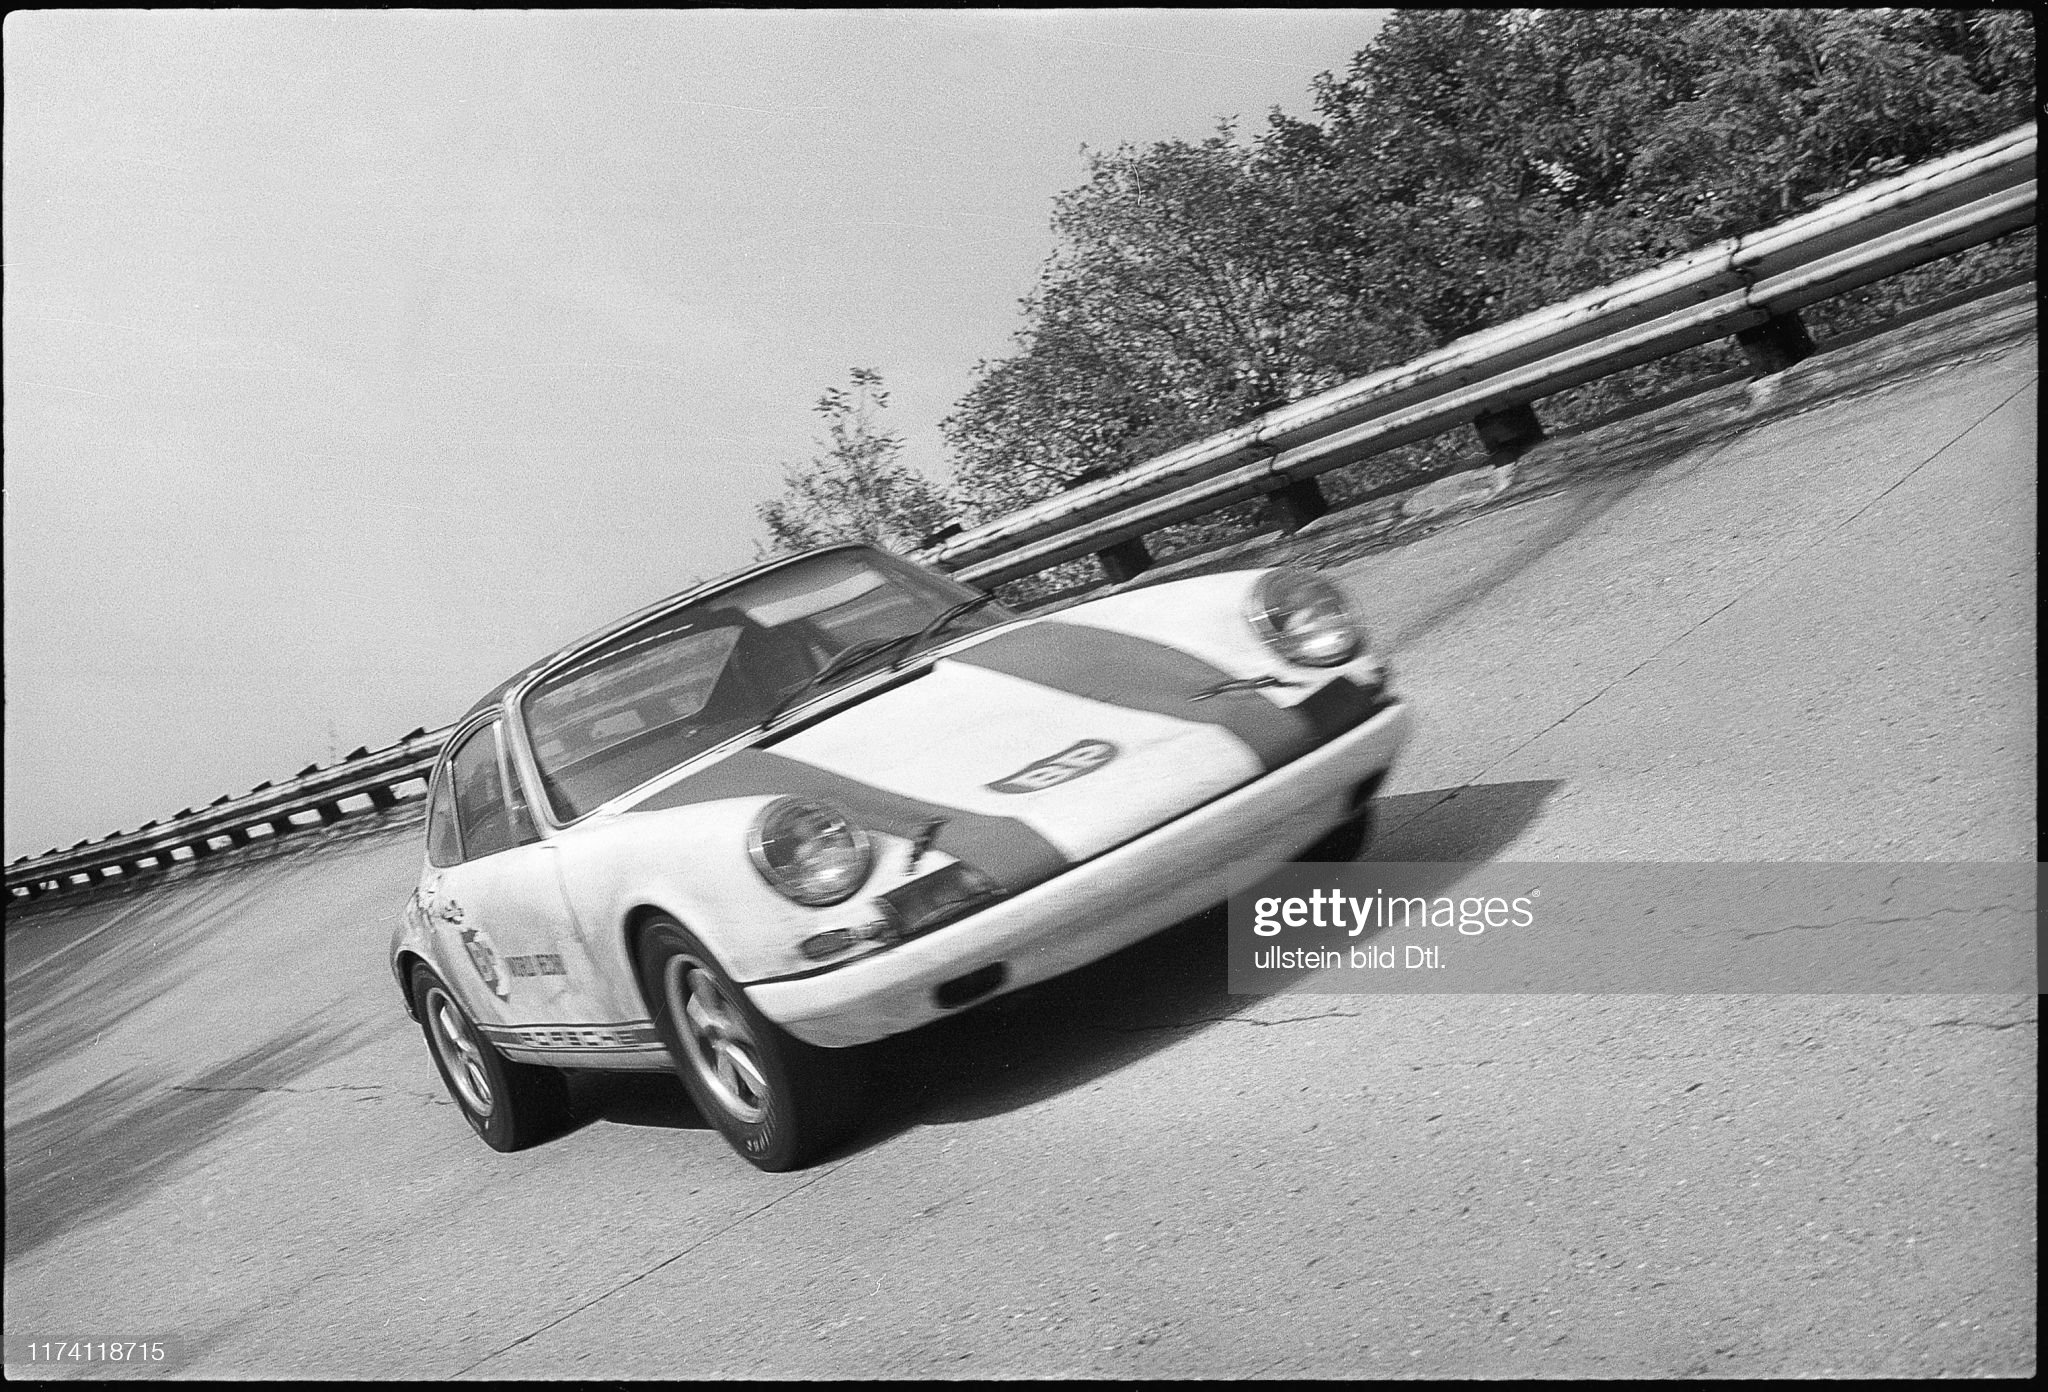 Jo Siffert driving a Porsche.